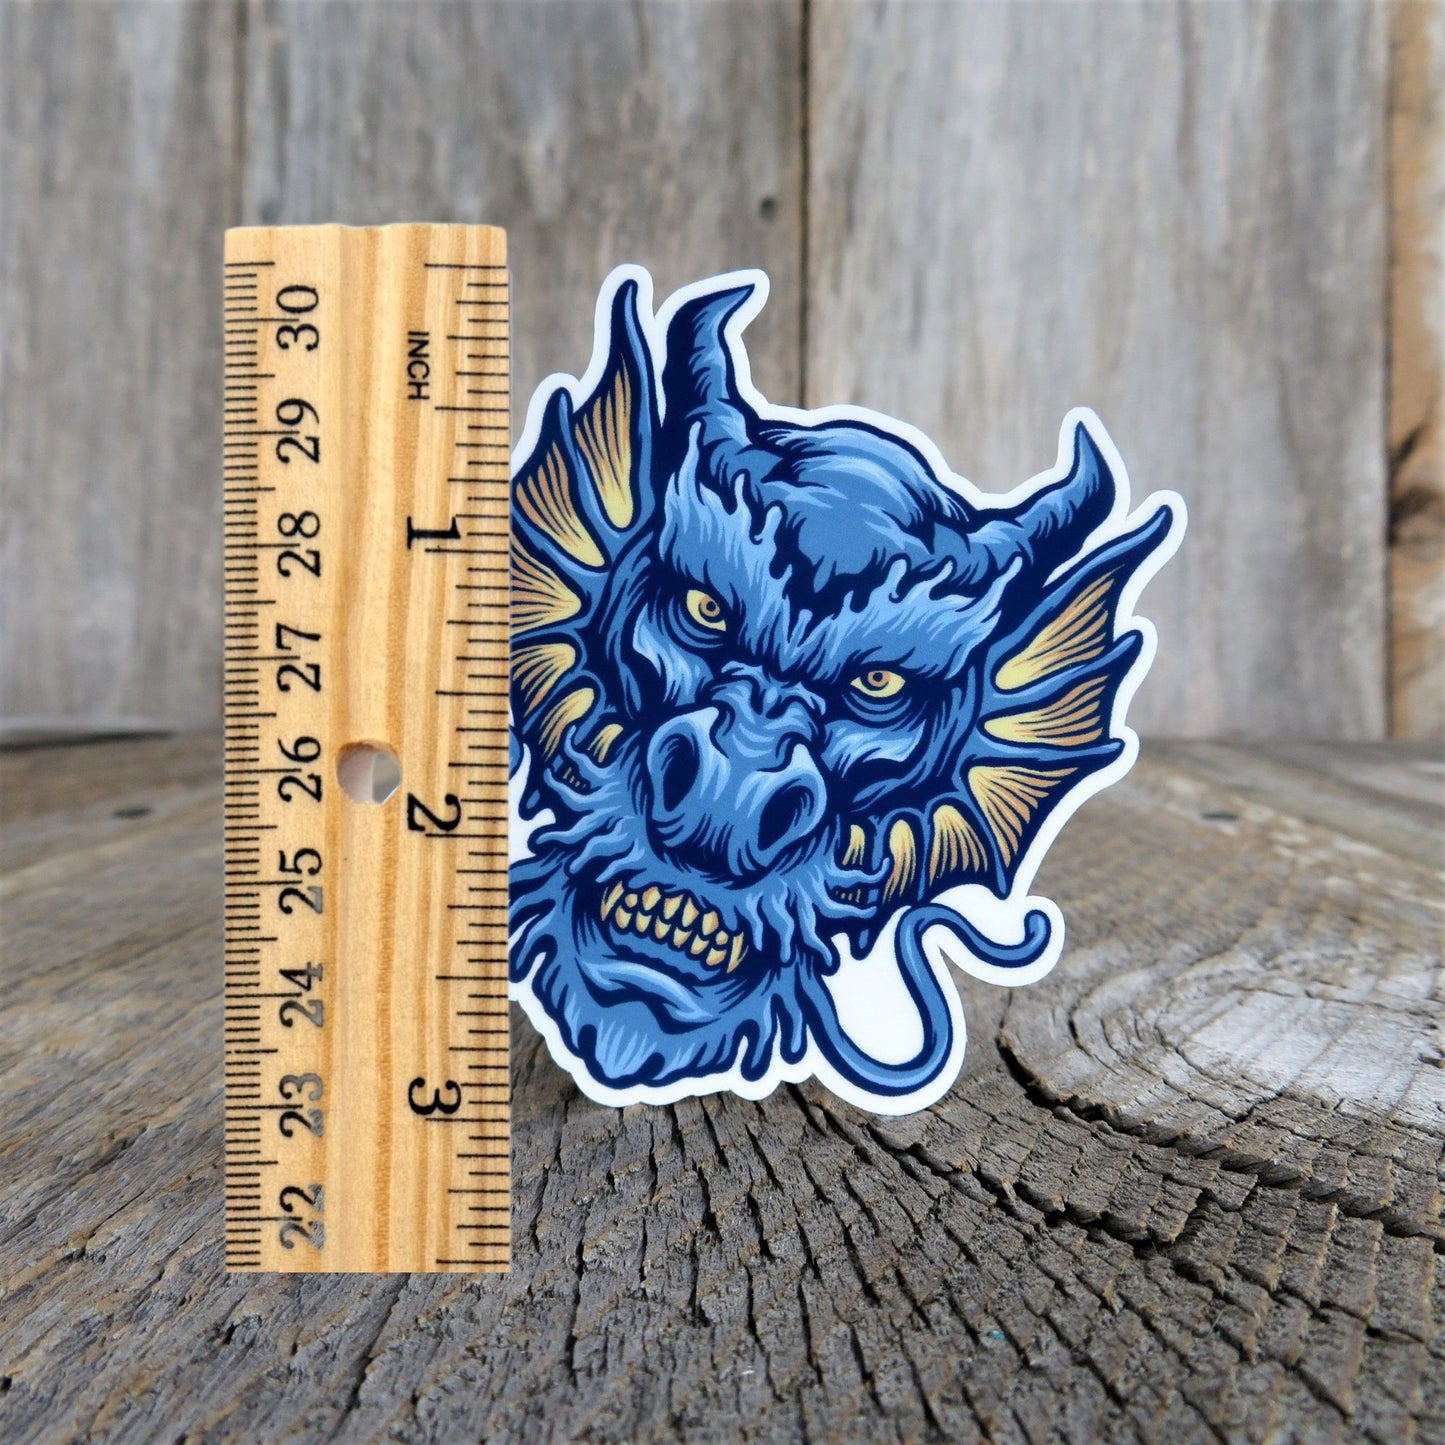 Fierce Blue Dragon Face Sticker Full Color Fantasy Lover Water Bottle Sticker